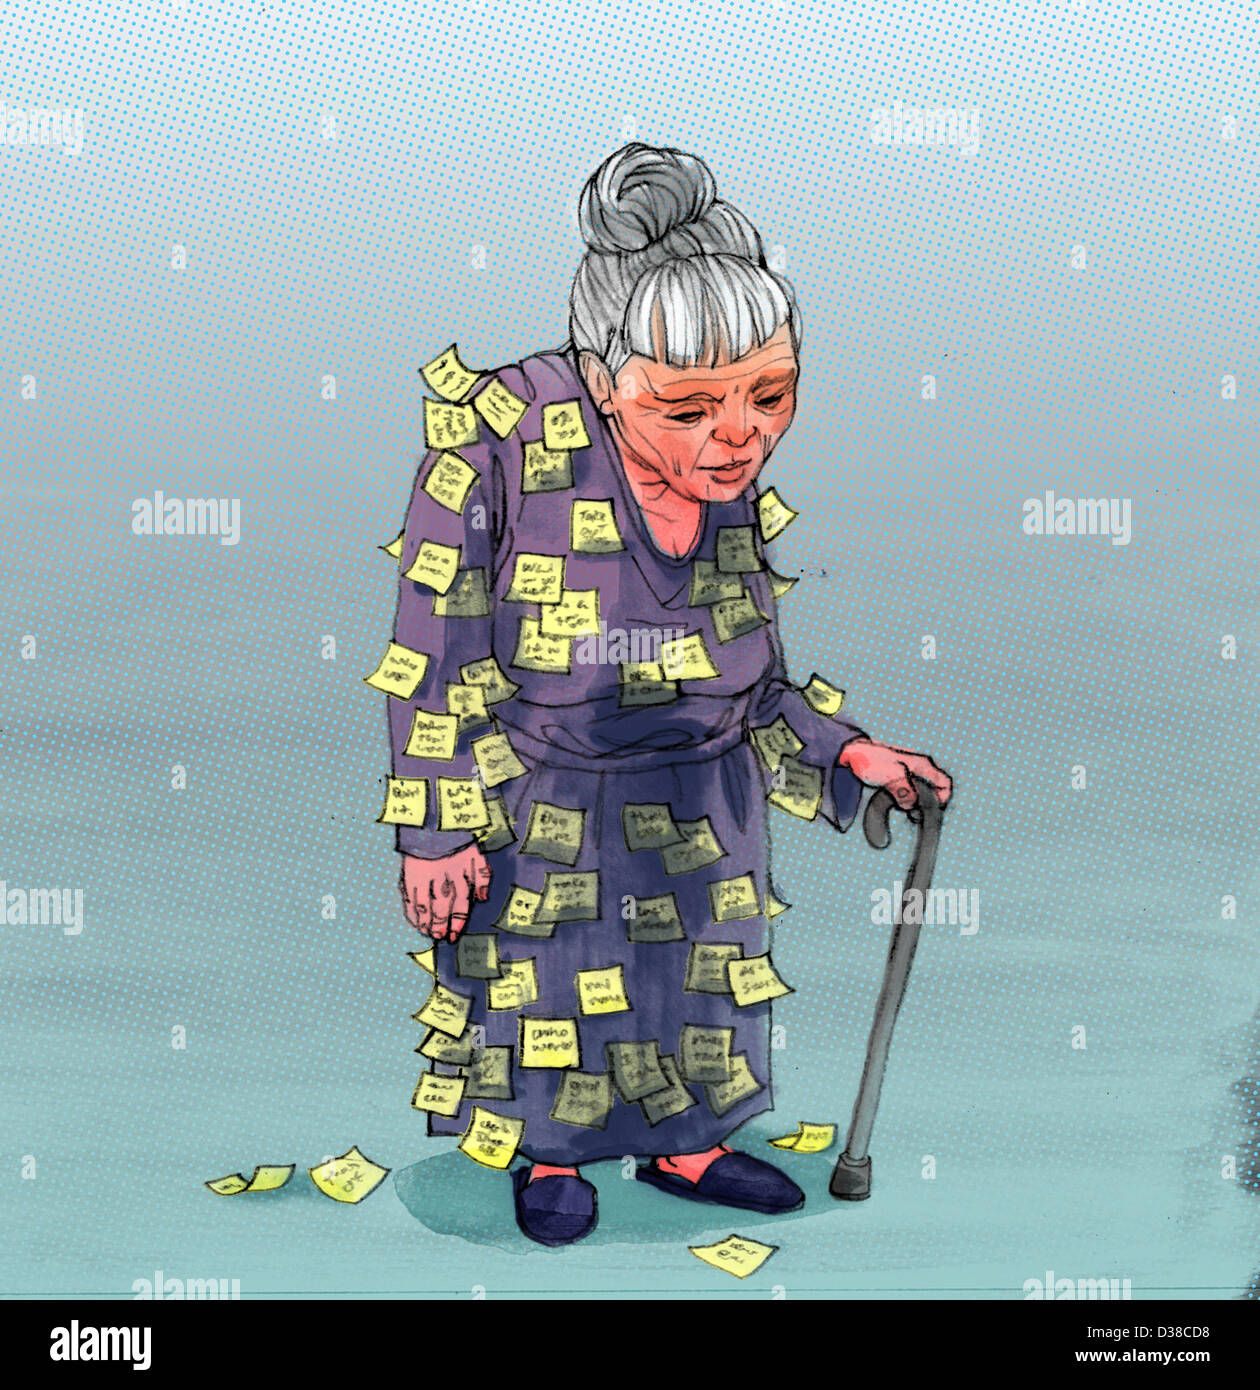 Anschauliches Bild der Seniorin mit Haftnotizen beigefügt auf Kleidung, Alzheimer-Krankheit darstellt Stockfoto